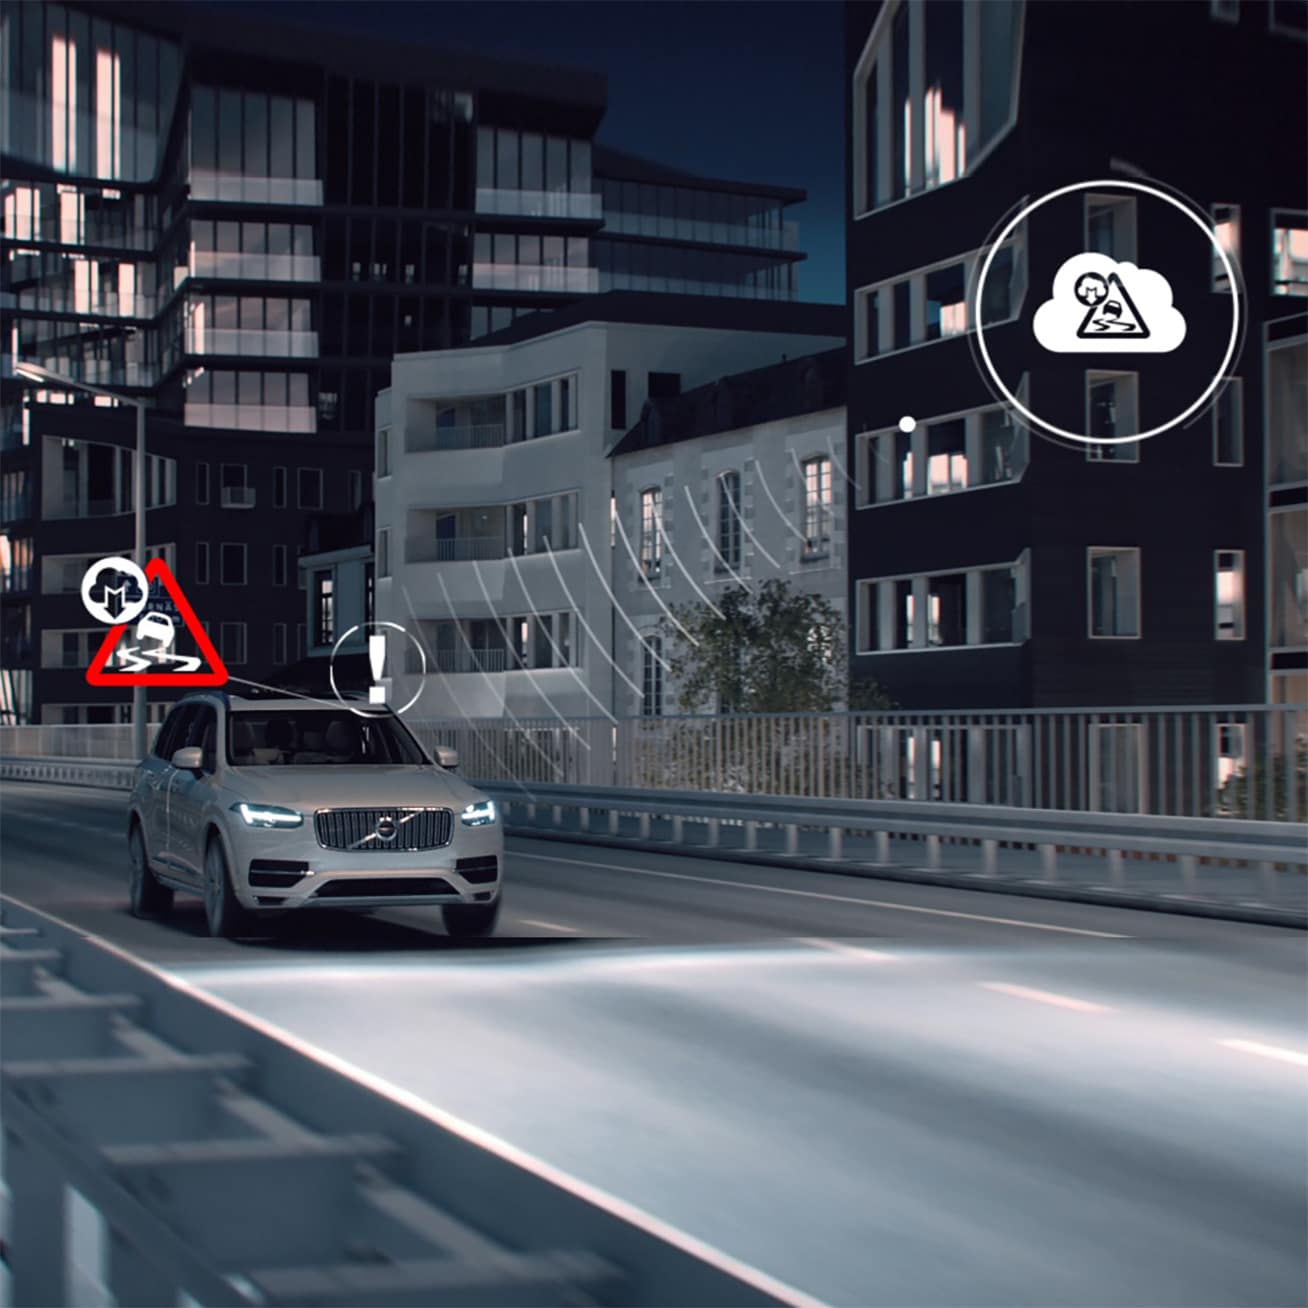 Imaginea unui Volvo XC90 conducând pe timp de noapte într-o zonă cu construcții, cu pictograme generate digital suprapuse.